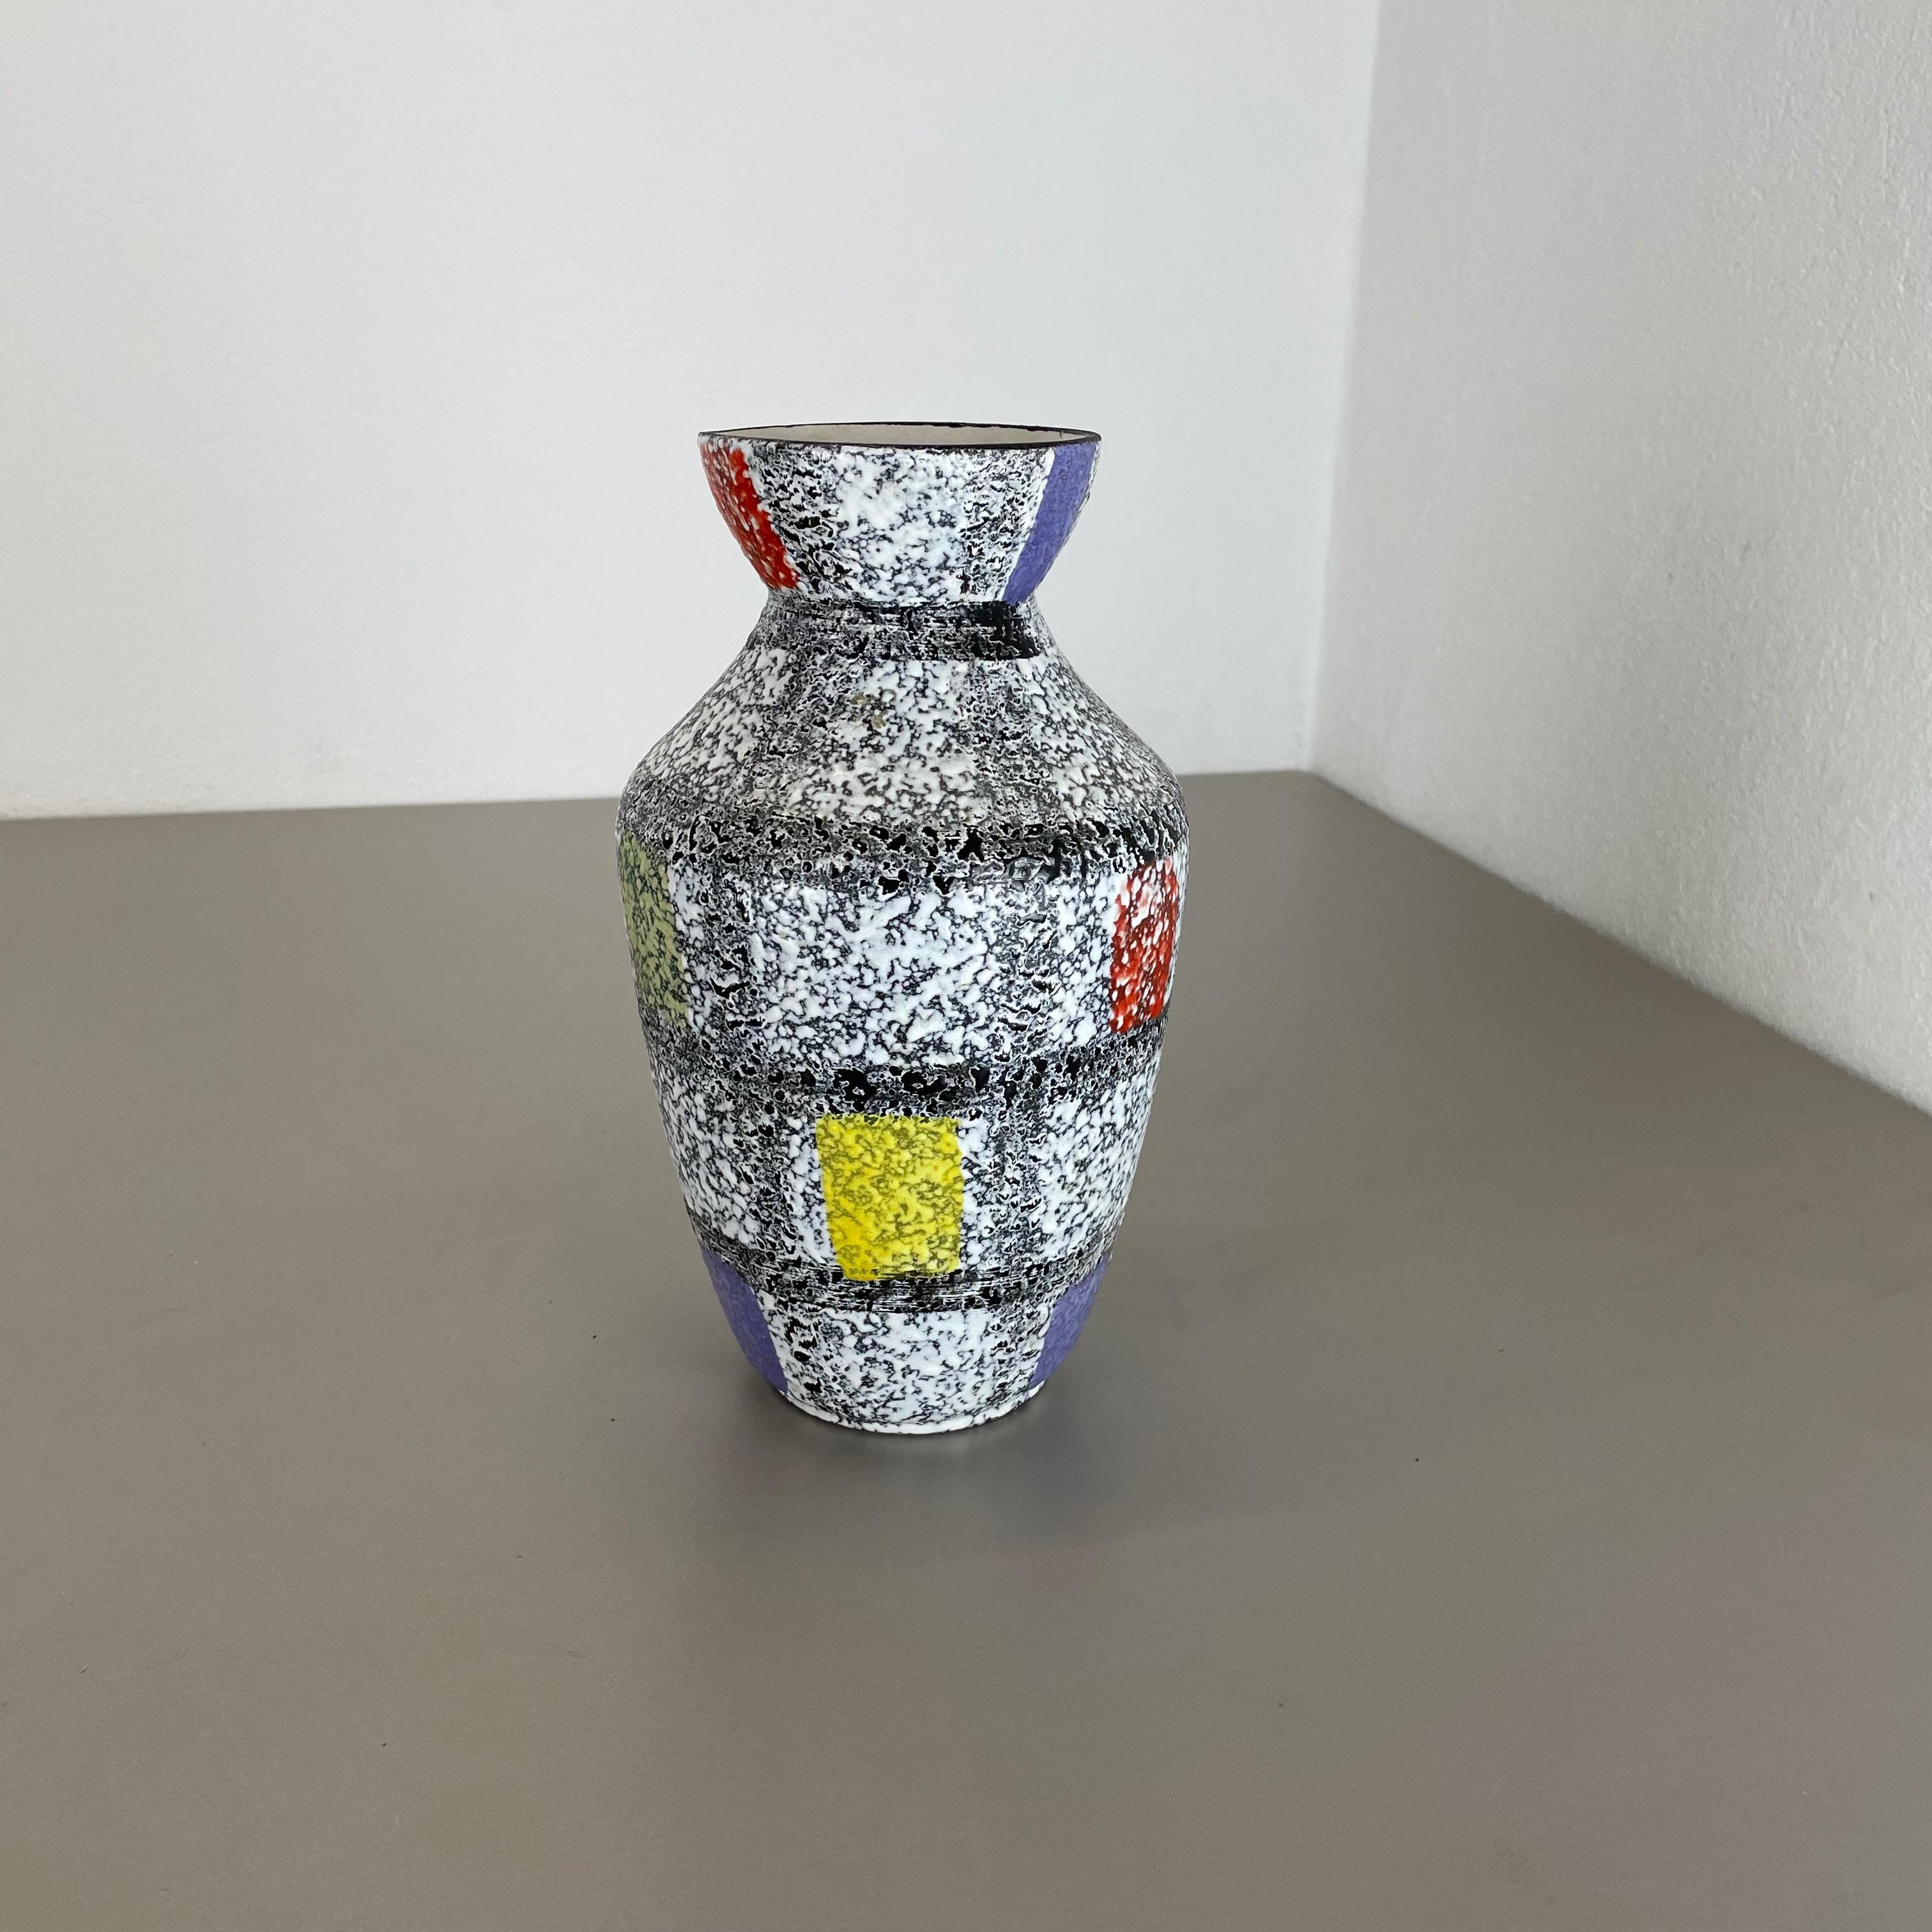 Article :

Vase en céramique


Producteur :

BAY Ceramic, Allemagne



Décennie :

1950s




Vase original en céramique des années 1950, fabriqué en Allemagne. Production allemande de haute qualité avec une belle peinture abstraite